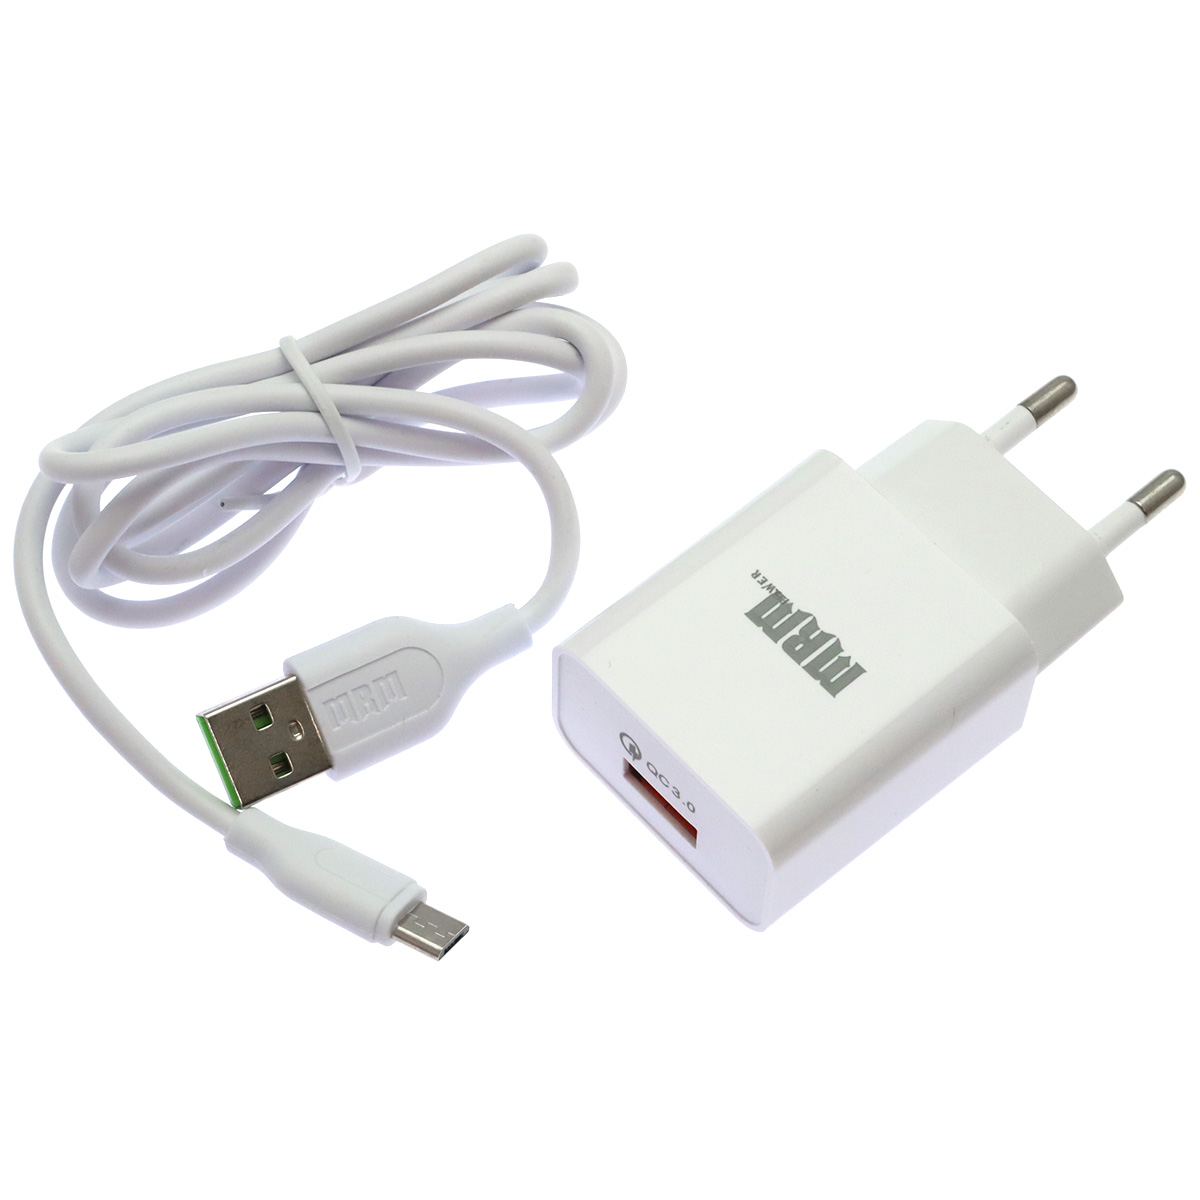 СЗУ (Сетевое зарядное устройство) MRM P30 с кабелем Micro USB, 3A, 1 USB, QC3.0, длина 1 метр, цвет белый